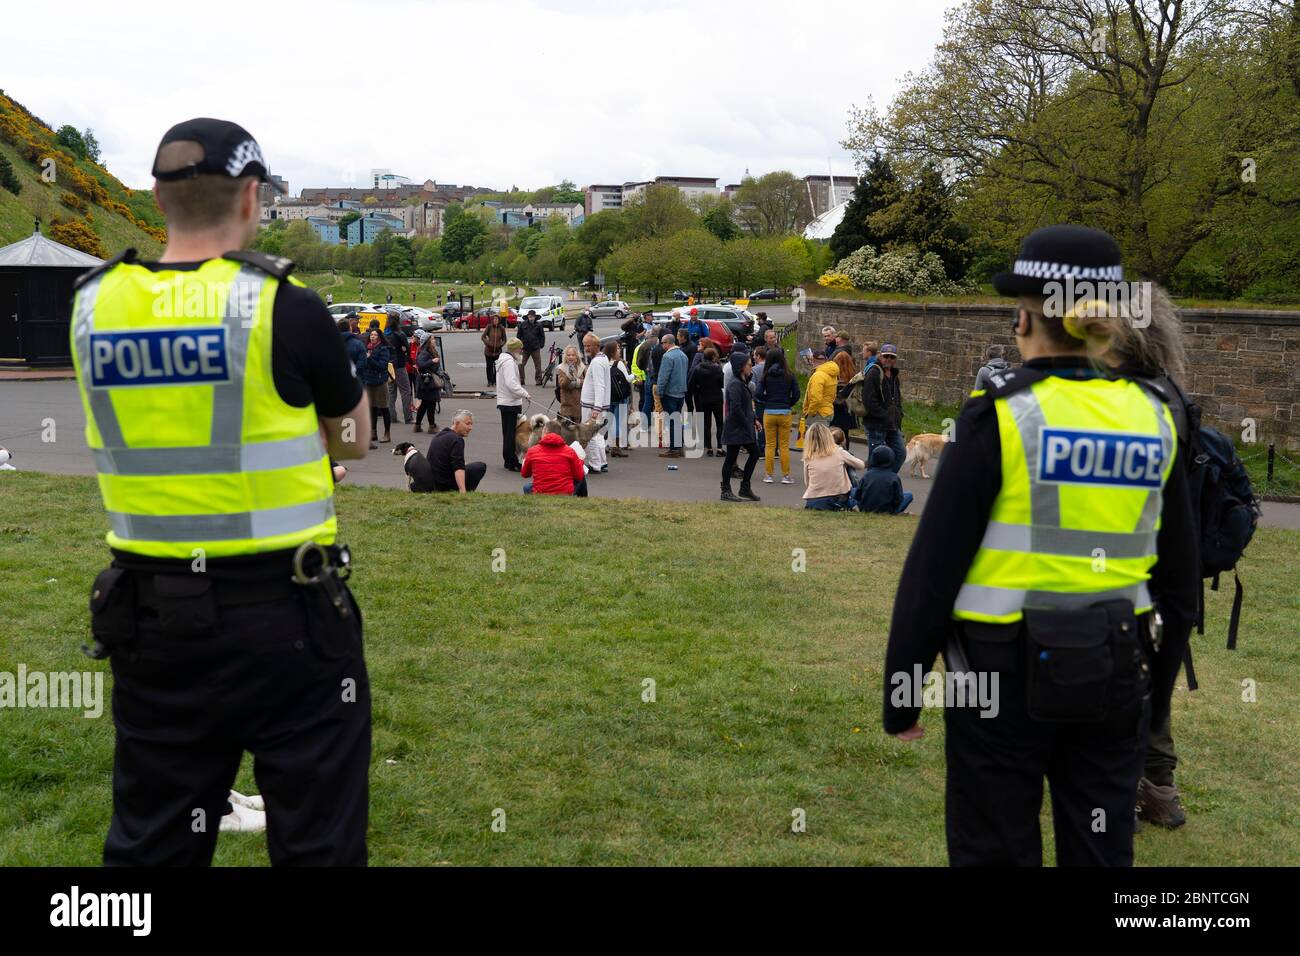 Edimburgo, Escocia, Reino Unido. La policía vigila a un pequeño grupo de personas en Holyrood Park. Es posible que uno o dos miembros del público formaran parte de una protesta contra el cierre de la cárcel en el parque que fue promovida en Facebook esta semana. Sin embargo, no hay protestas a gran escala en el parque a la hora de inicio prevista. Iain Masterton/Alamy Live News Foto de stock